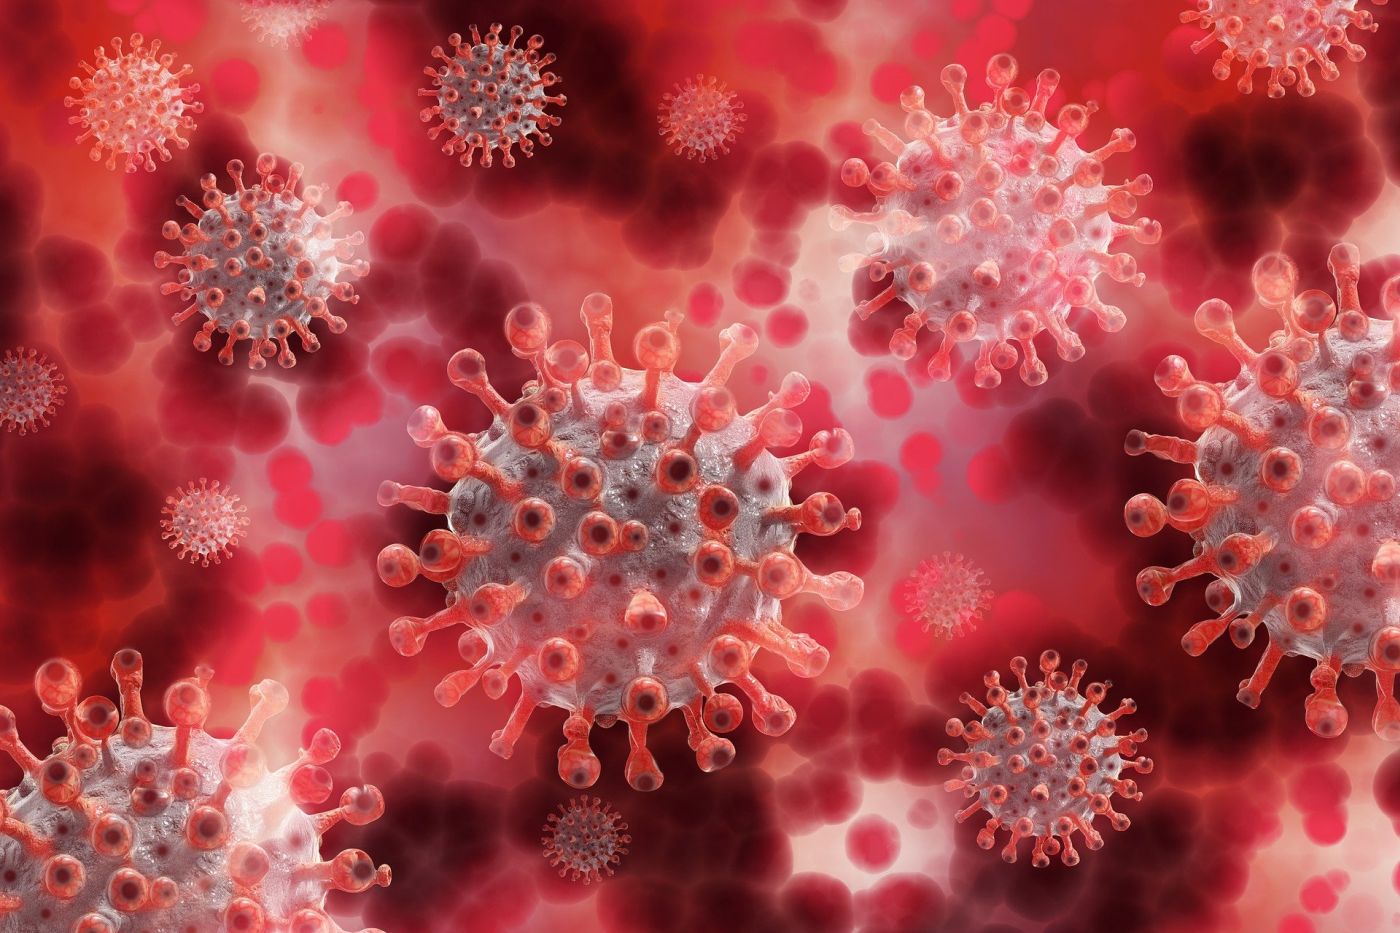 Incidența coronavirusului în municipiul Constanța a trecut de 10 cazuri la mia de locuitori